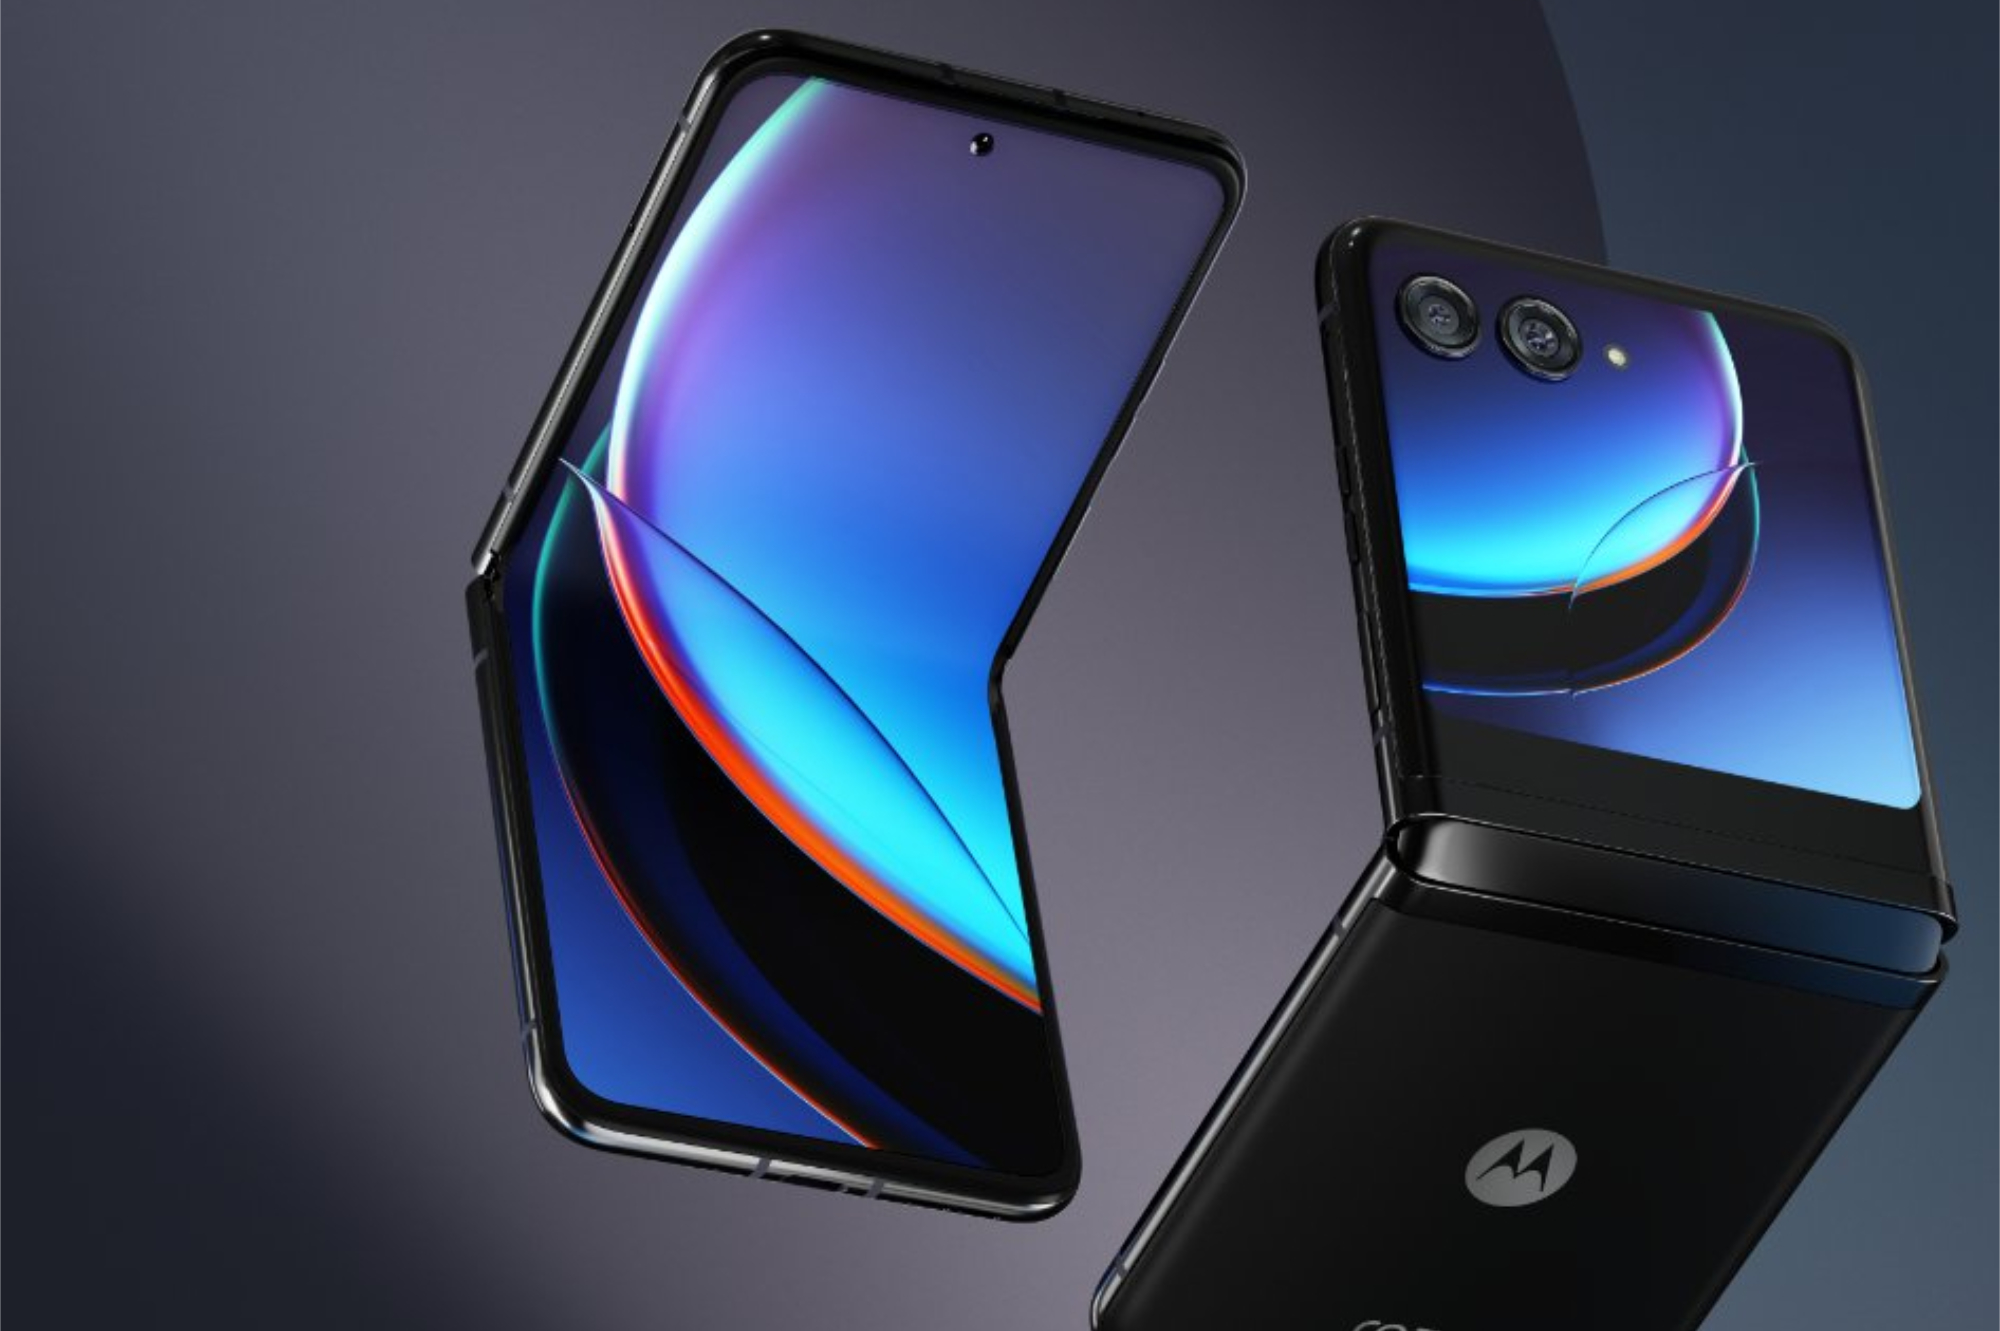 Motorola Razr 40 Ultra looks beautiful in these new leaks